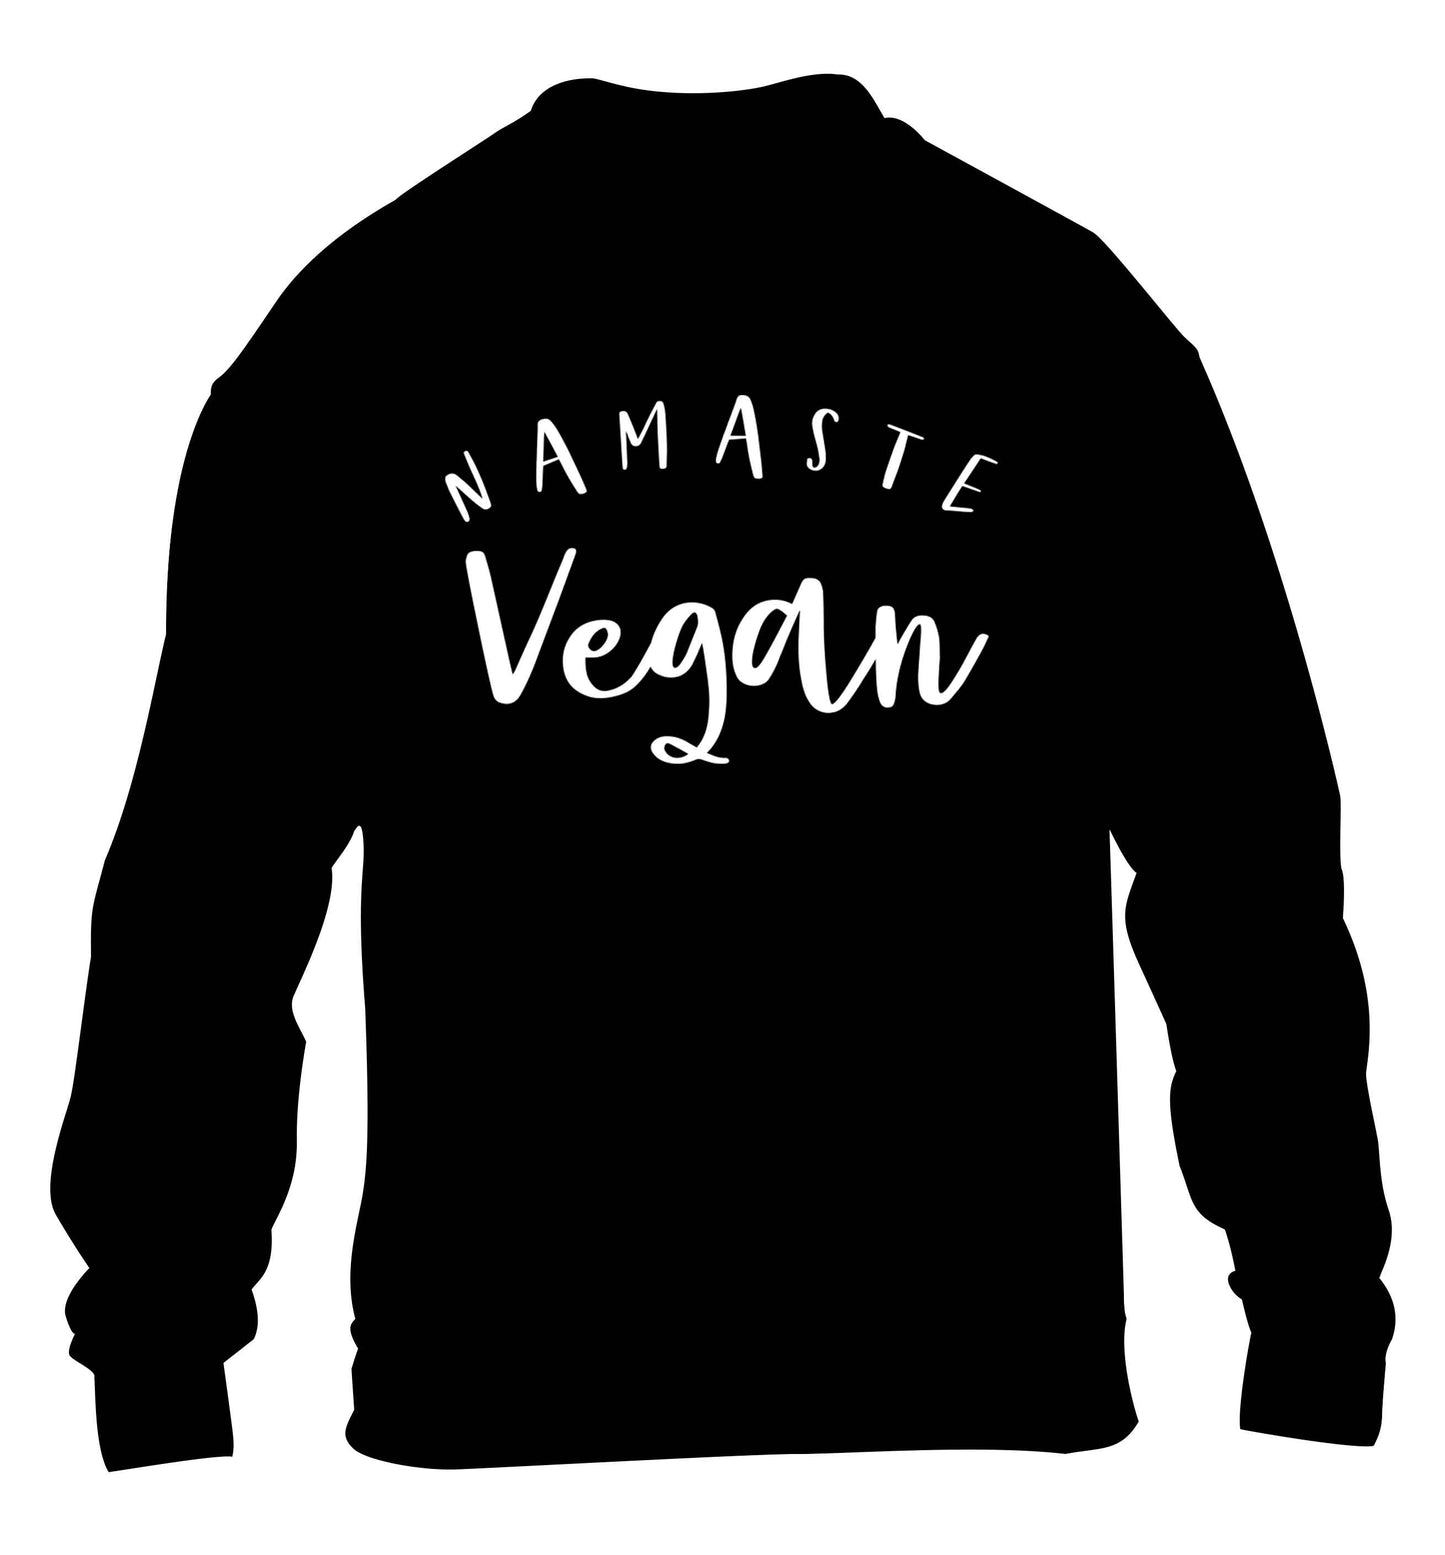 Namaste vegan children's black sweater 12-13 Years